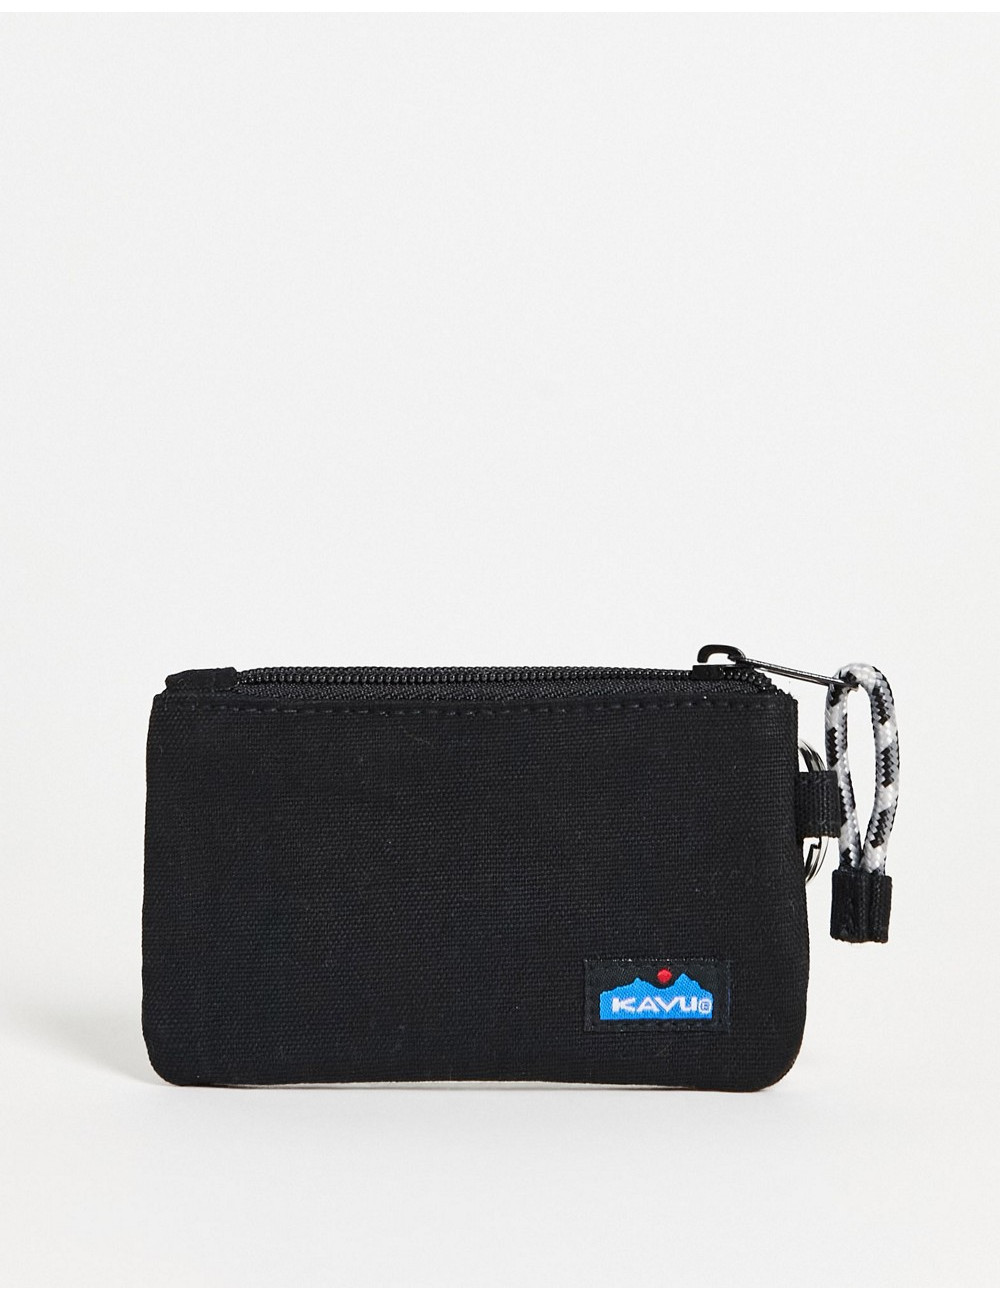 Kavu Stirling wallet in black